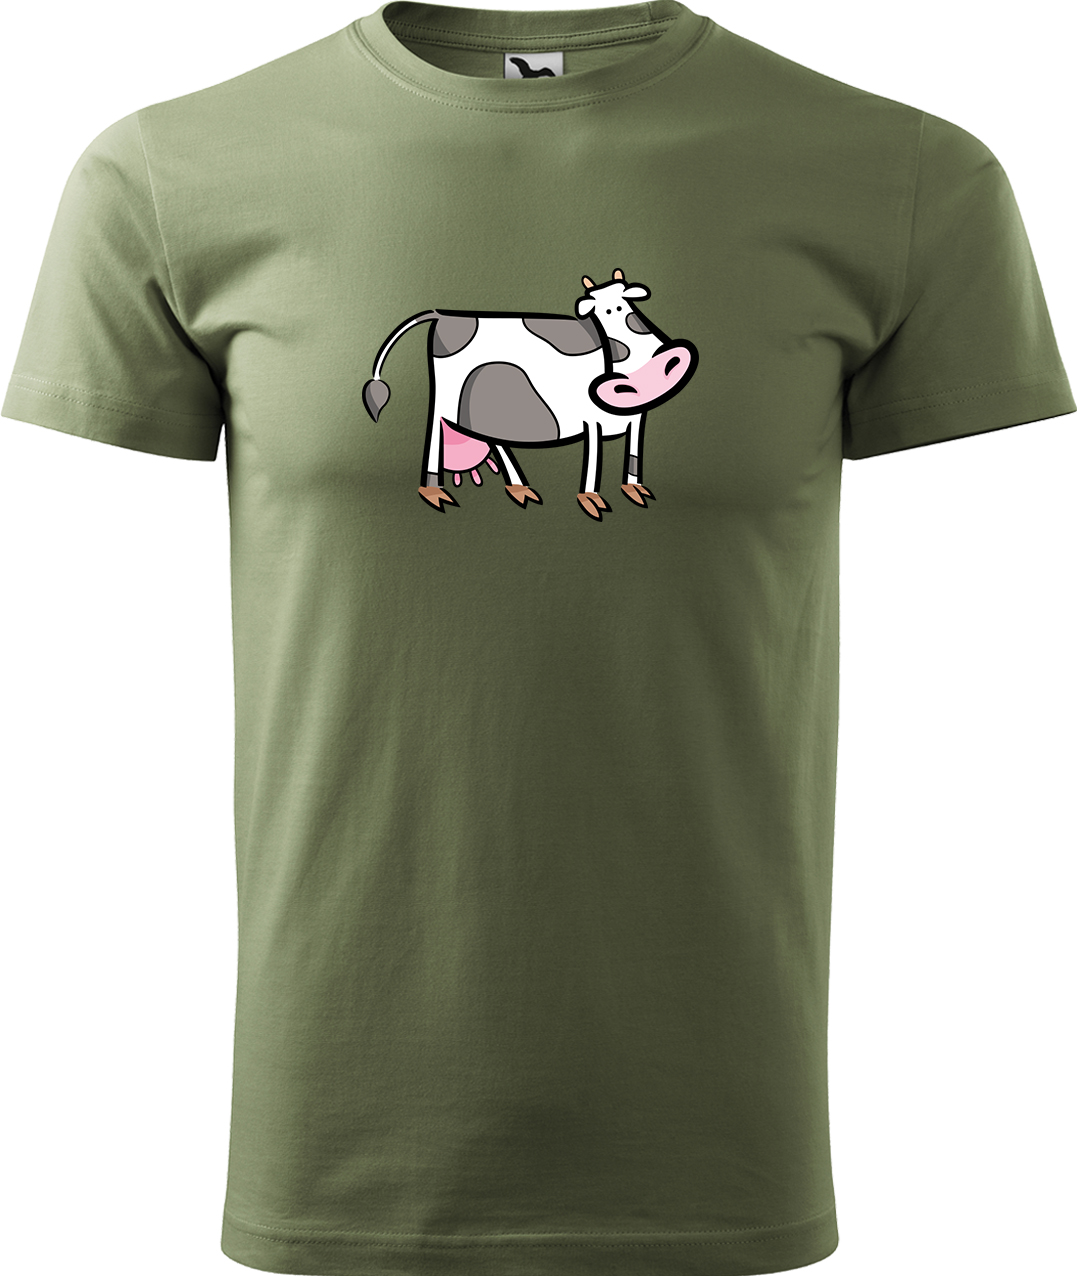 Pánské tričko s krávou - Kravička Velikost: L, Barva: Světlá khaki (28), Střih: pánský